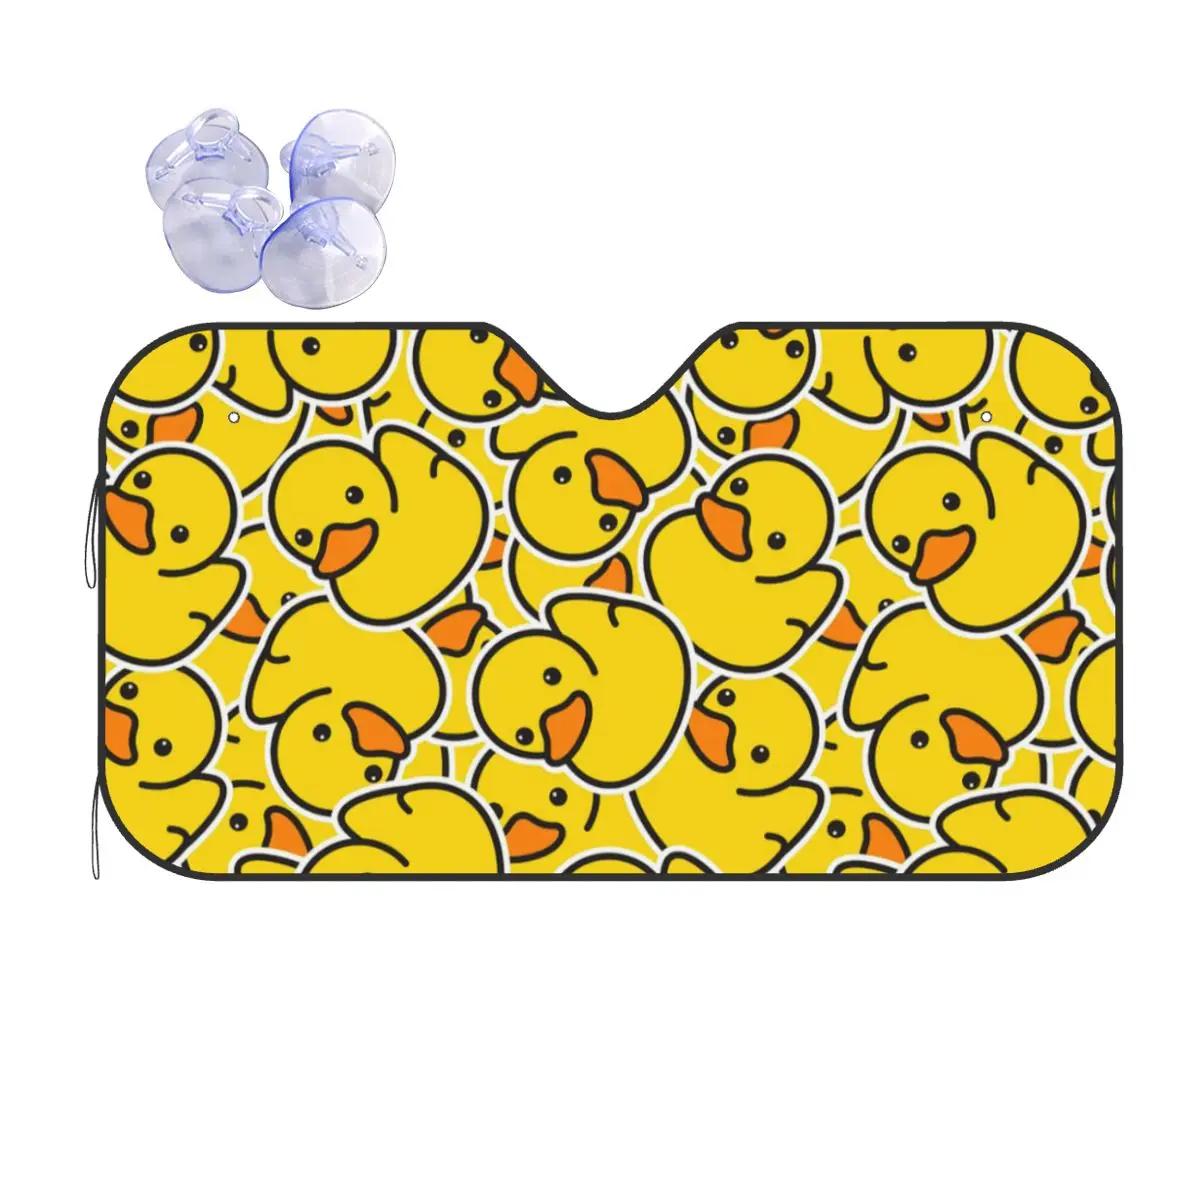 Yellow Duck Fashion Windshield Sunshade 70x130cm Cute Foils Sunshade Visor Car-styling